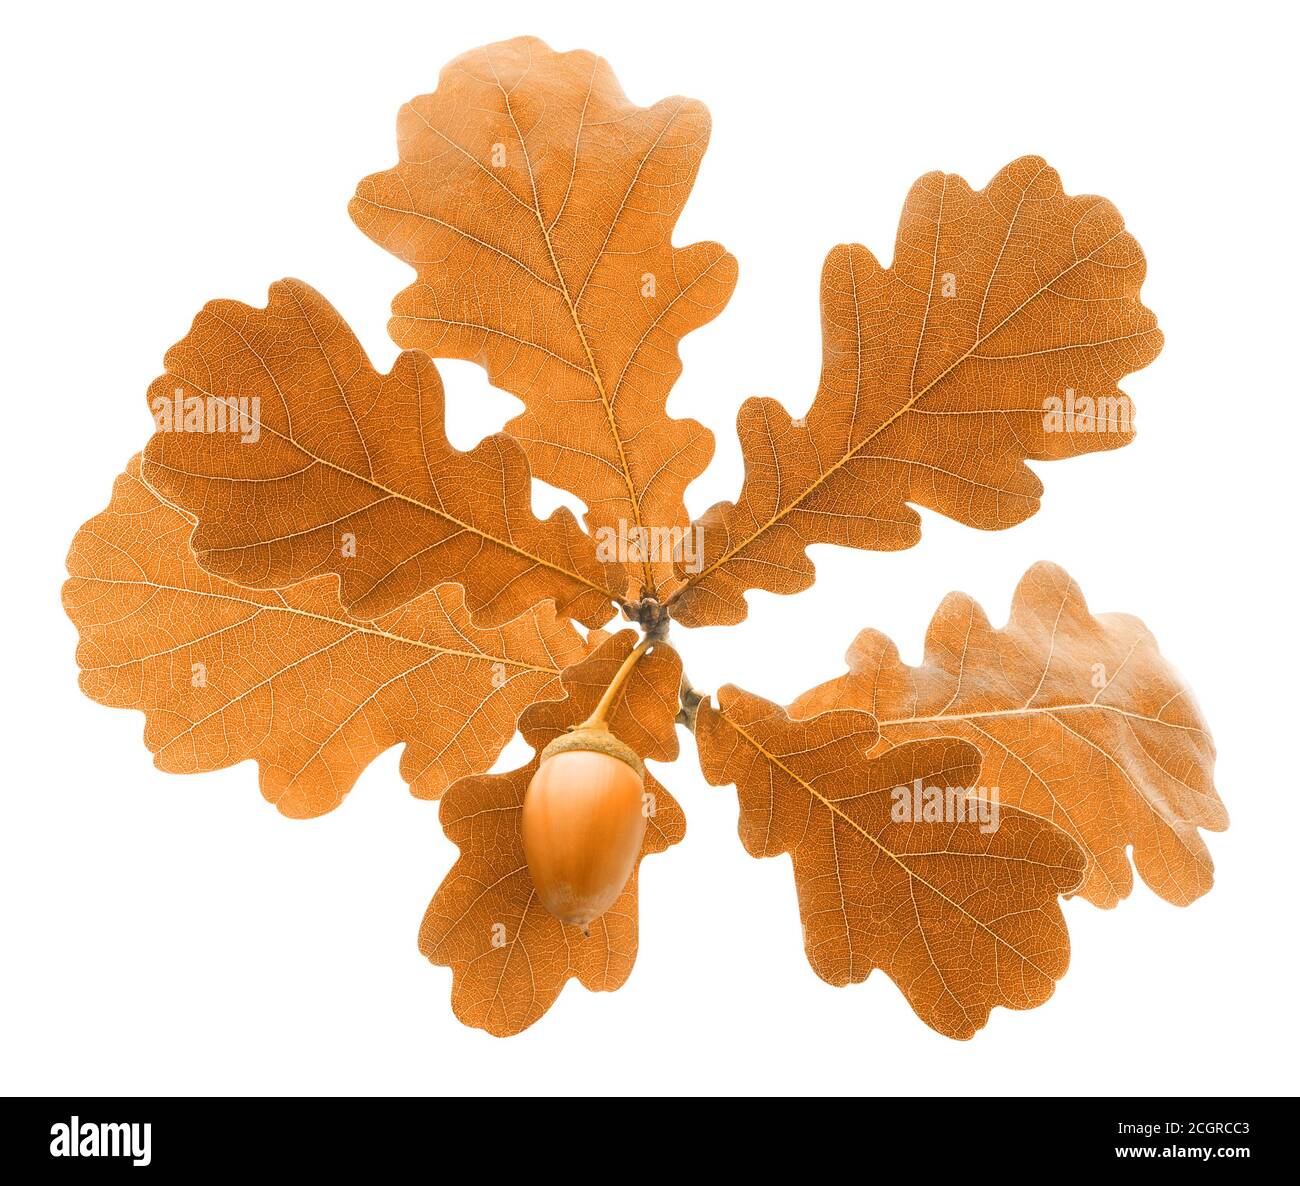 Ramo di quercia autunnale con foglie di colore marrone chiaro e acorno isolato su sfondo bianco Foto Stock